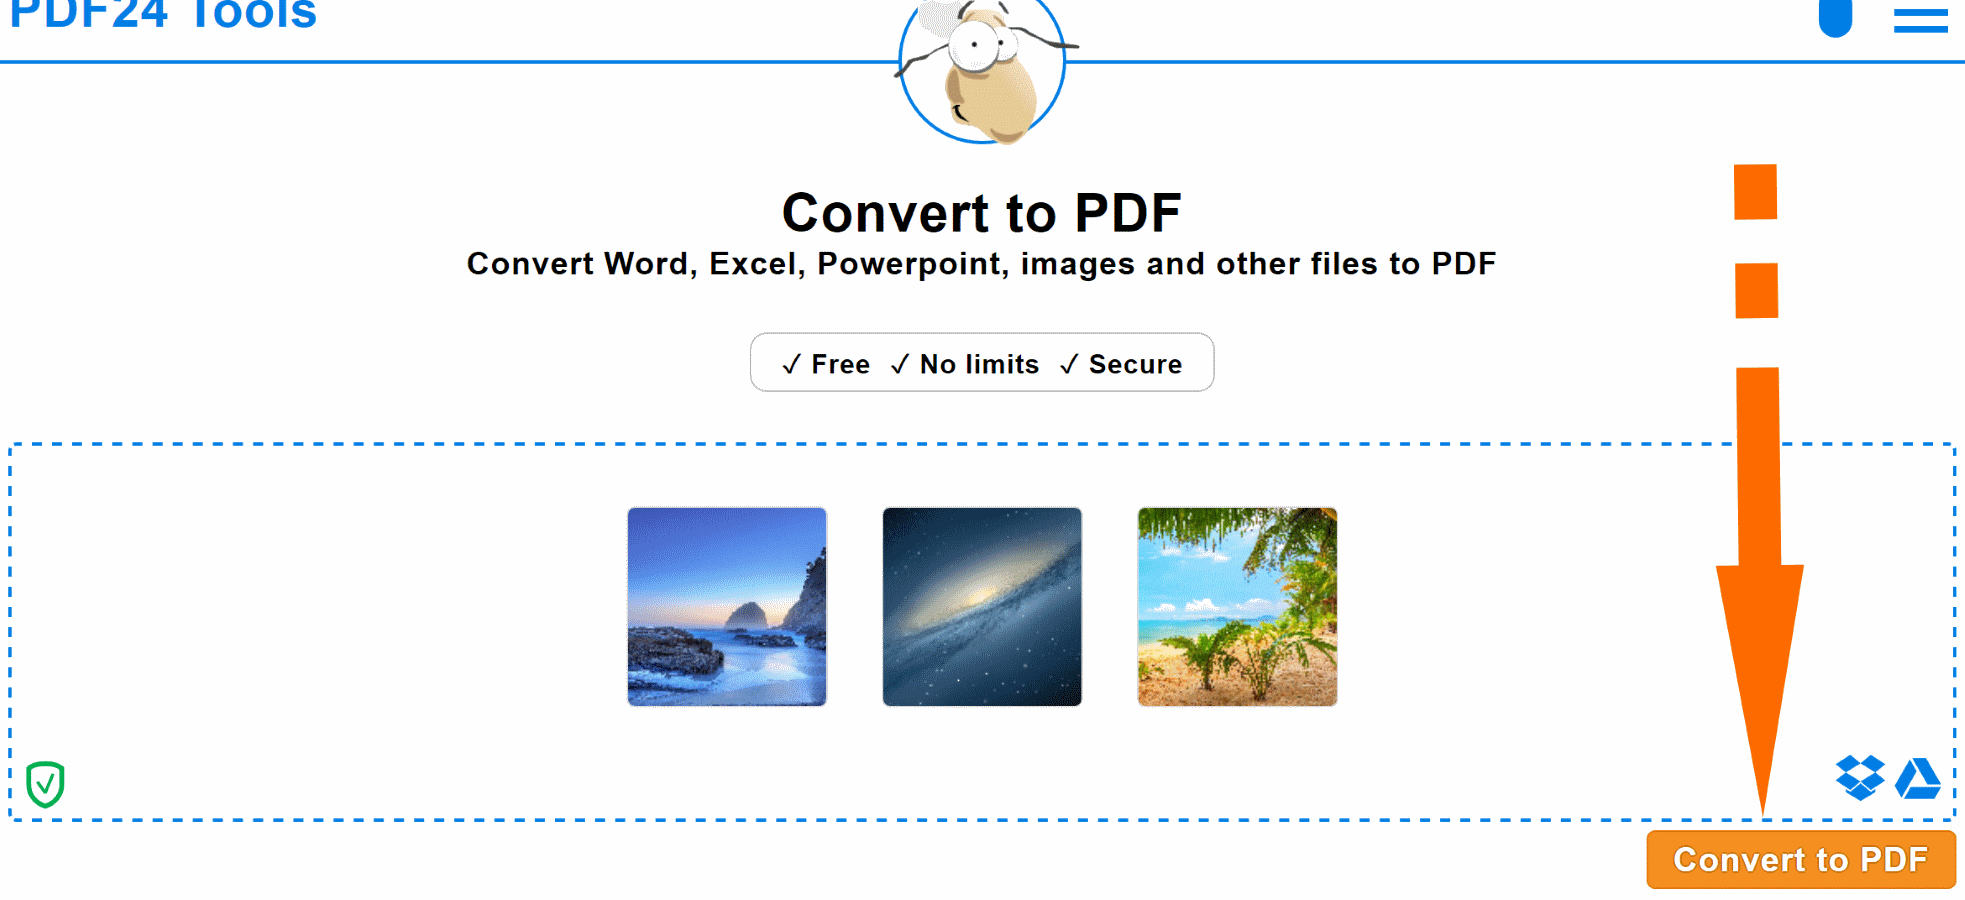 Converteer Jpg Naar Pdf - Snel, Online, Gratis - Pdf24 Tools